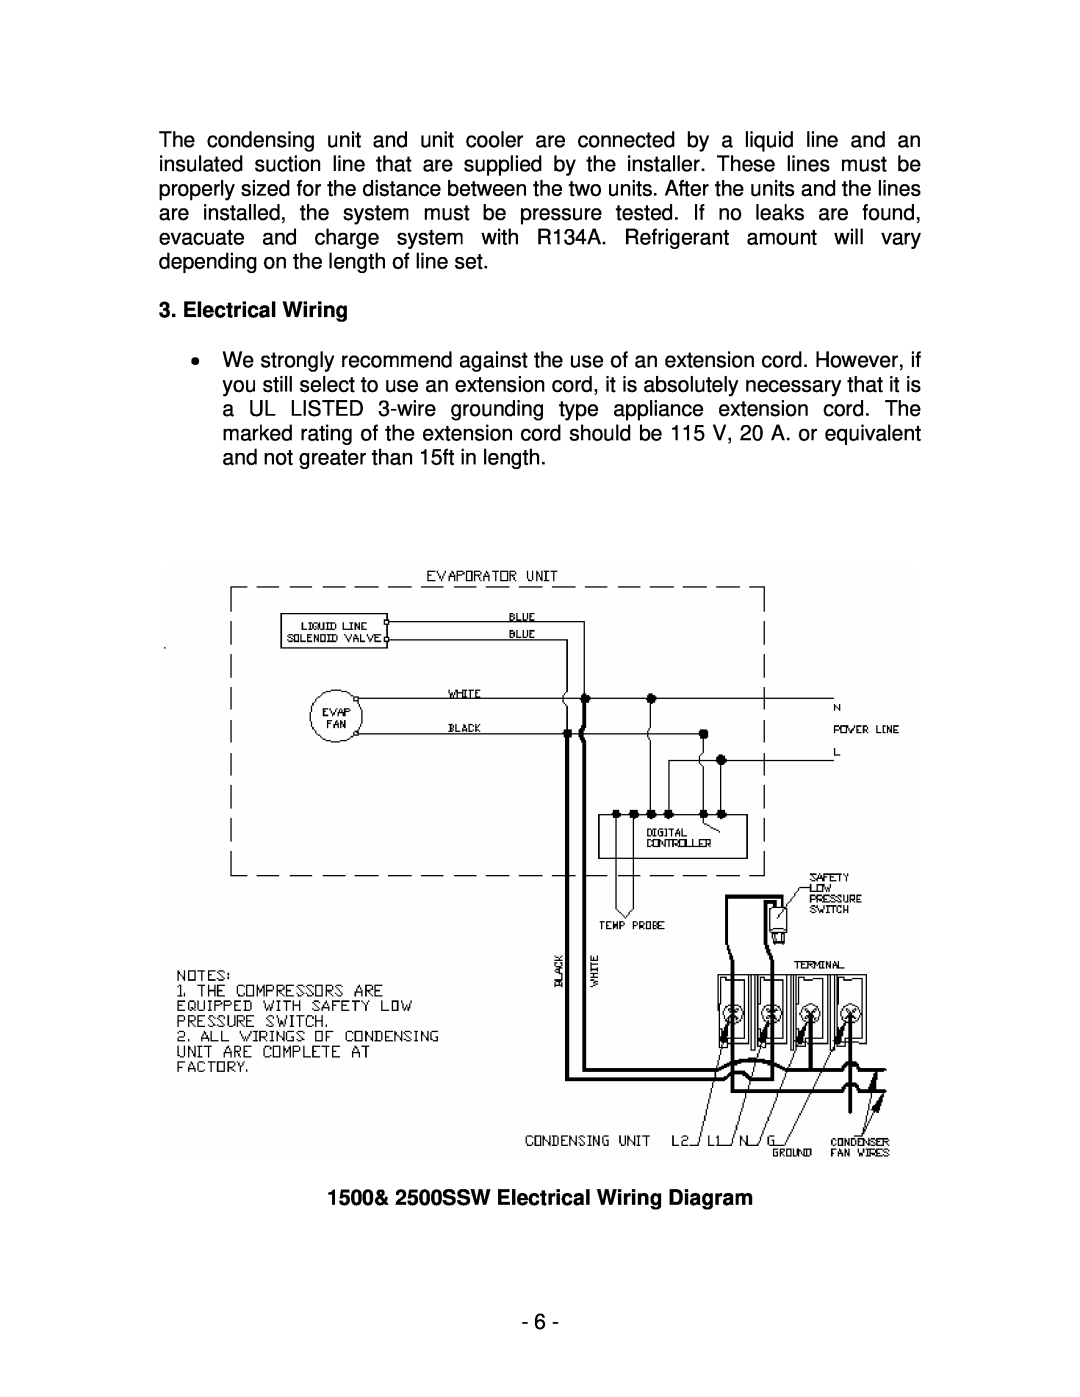 Vinotemp WM1500 SSW, WM2500 SSW manual 1500& 2500SSW Electrical Wiring Diagram 